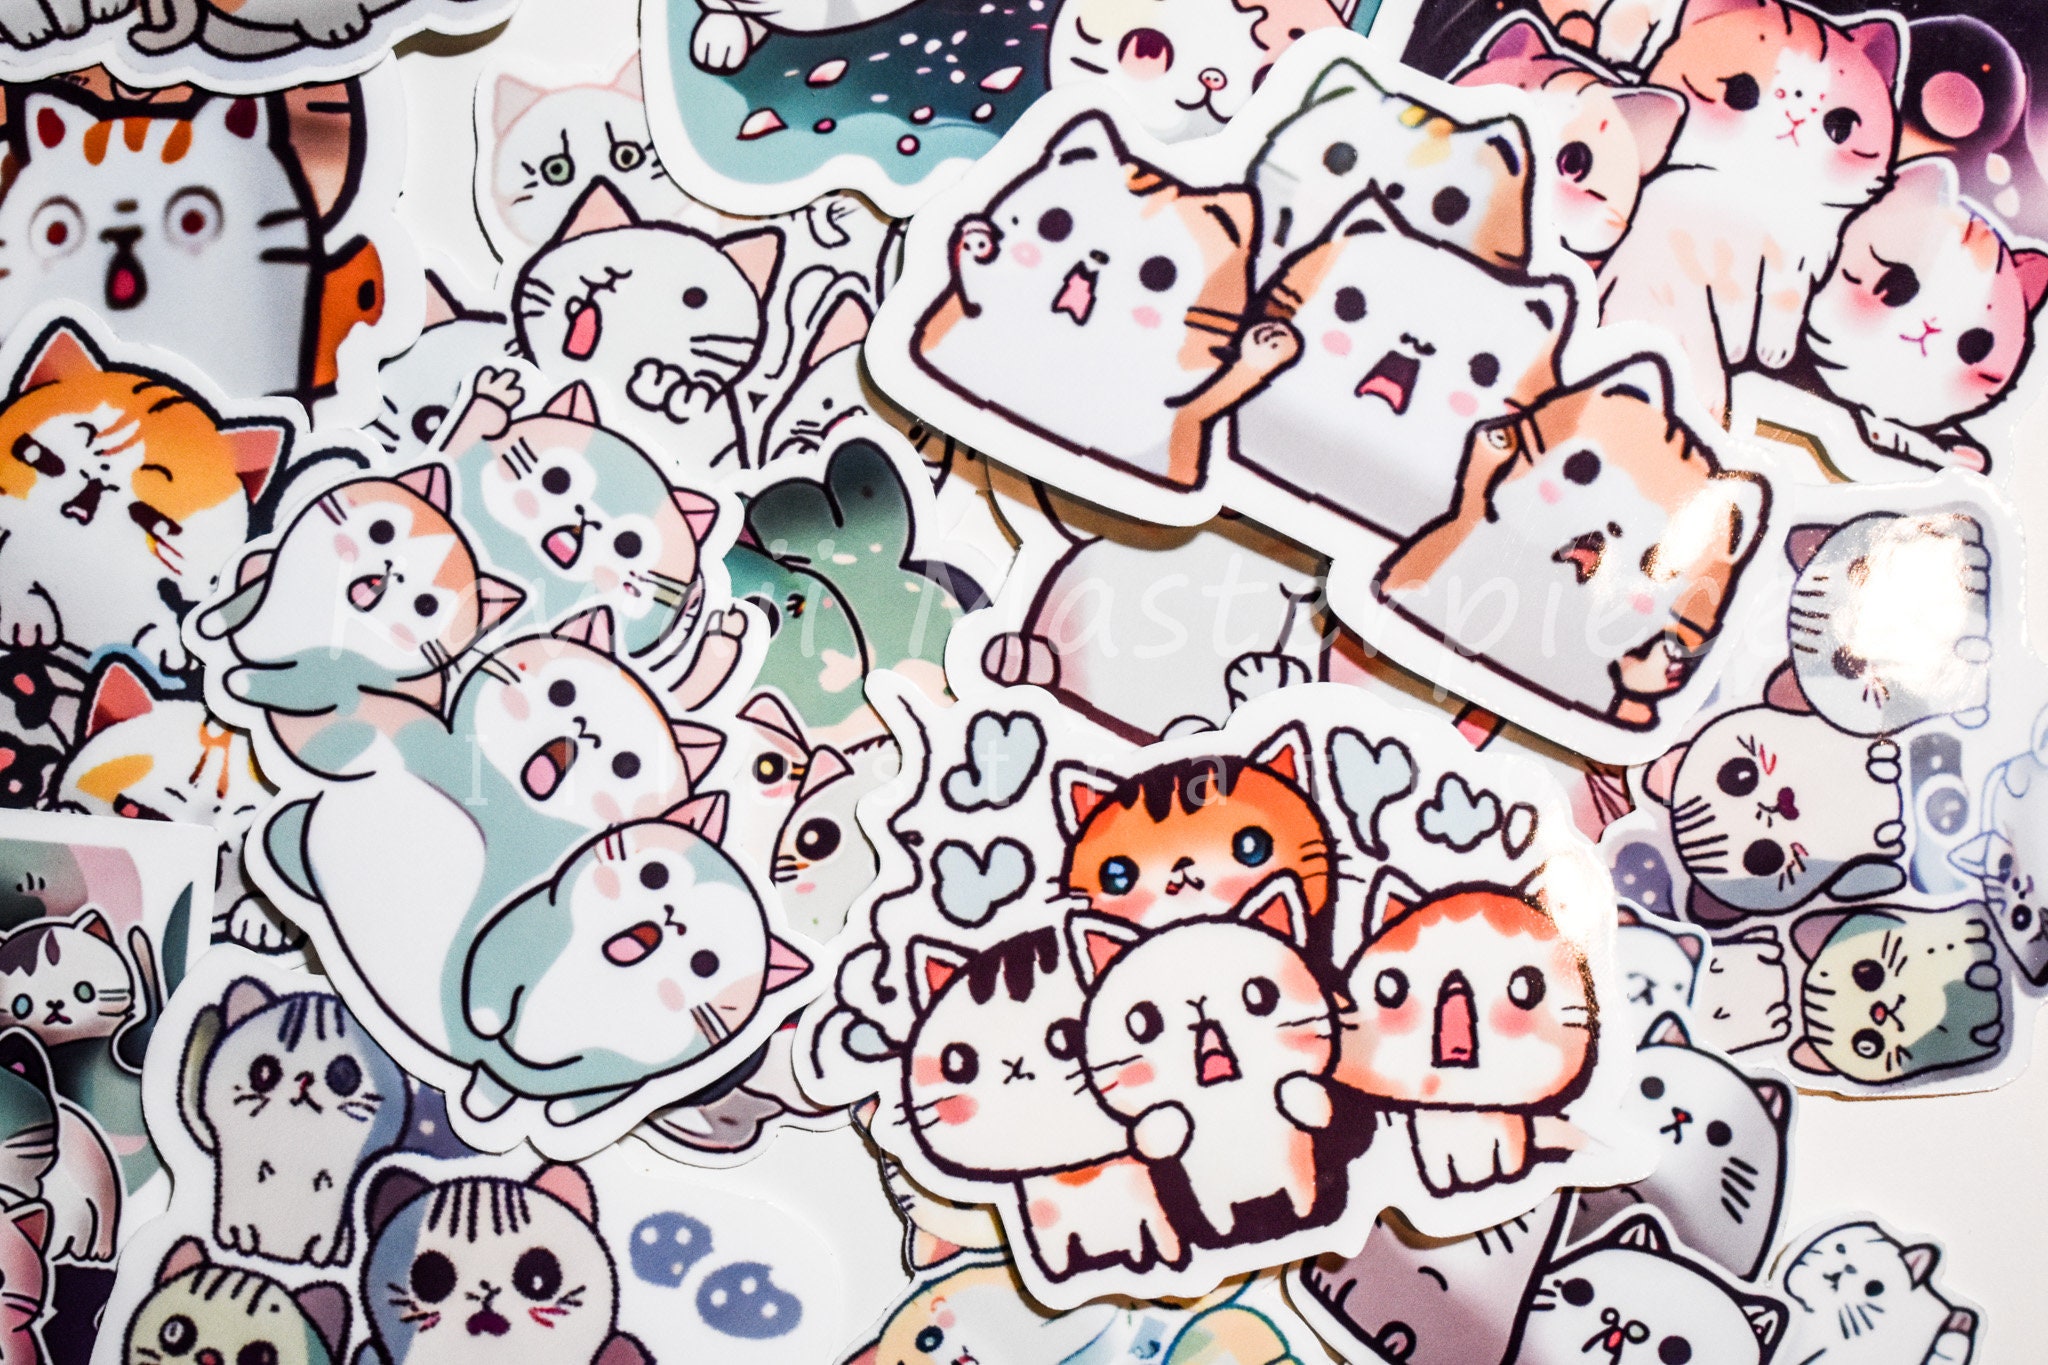 Cat Sticker Pack, Cute Stickers 10 pcs